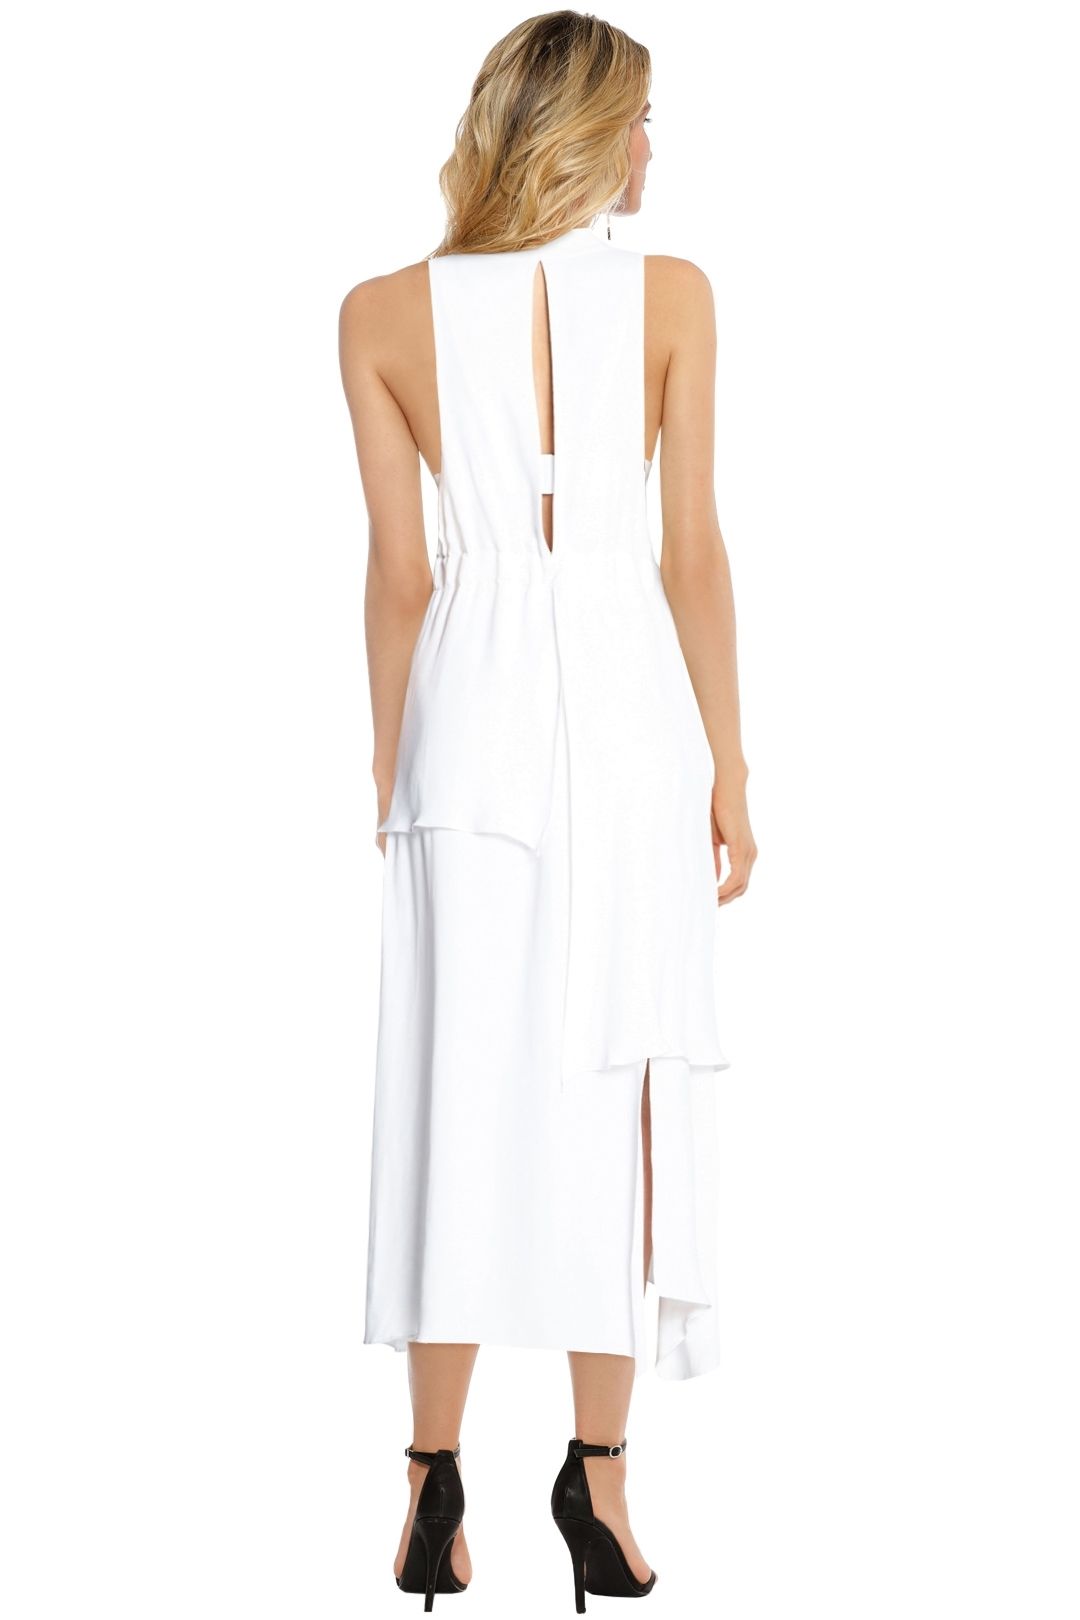 Manning Cartell - New Order Dress - White - Back